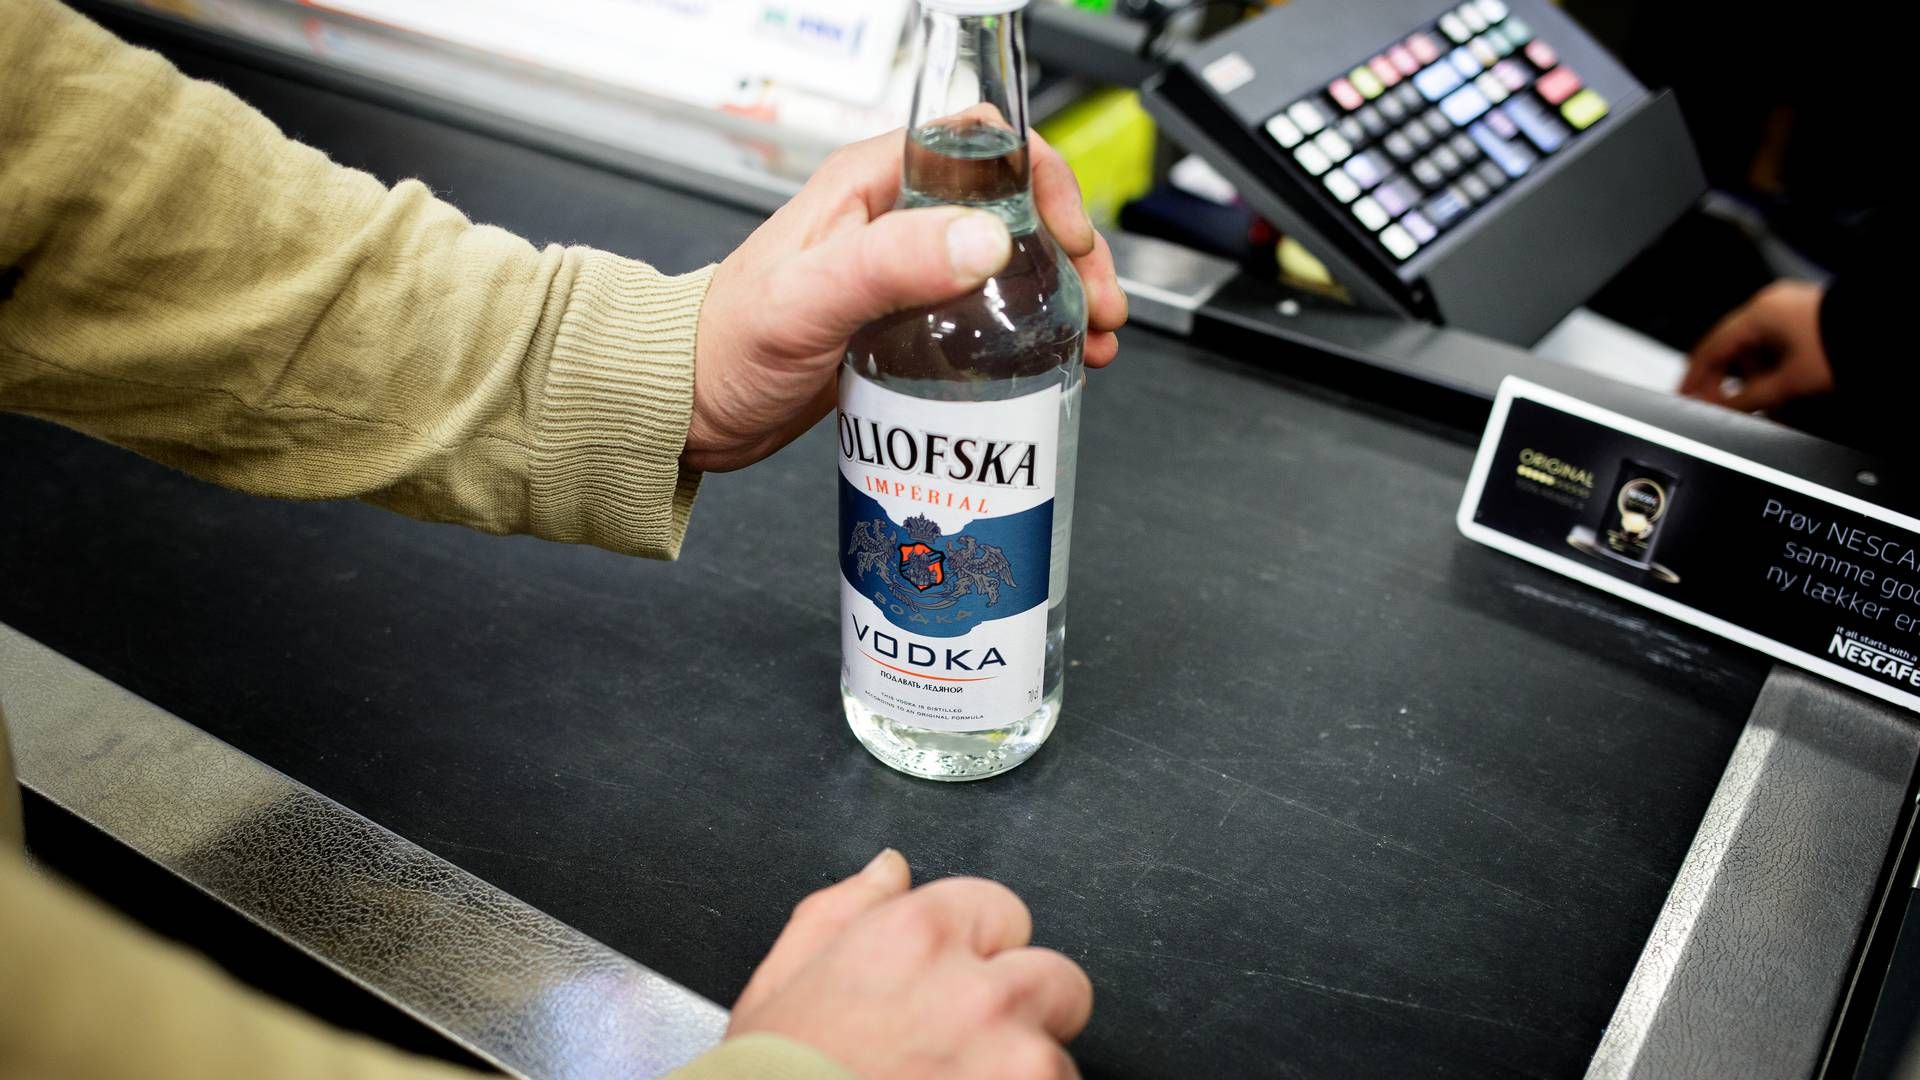 Blandt de forbrugere, der i forvejen har skruet ned for deres dagligvareindkøb, svarer over halvdelen i undersøgelse, at de helt har droppet at købe alkohol. | Foto: Lasse Kofod/Ritzau Scanpix.